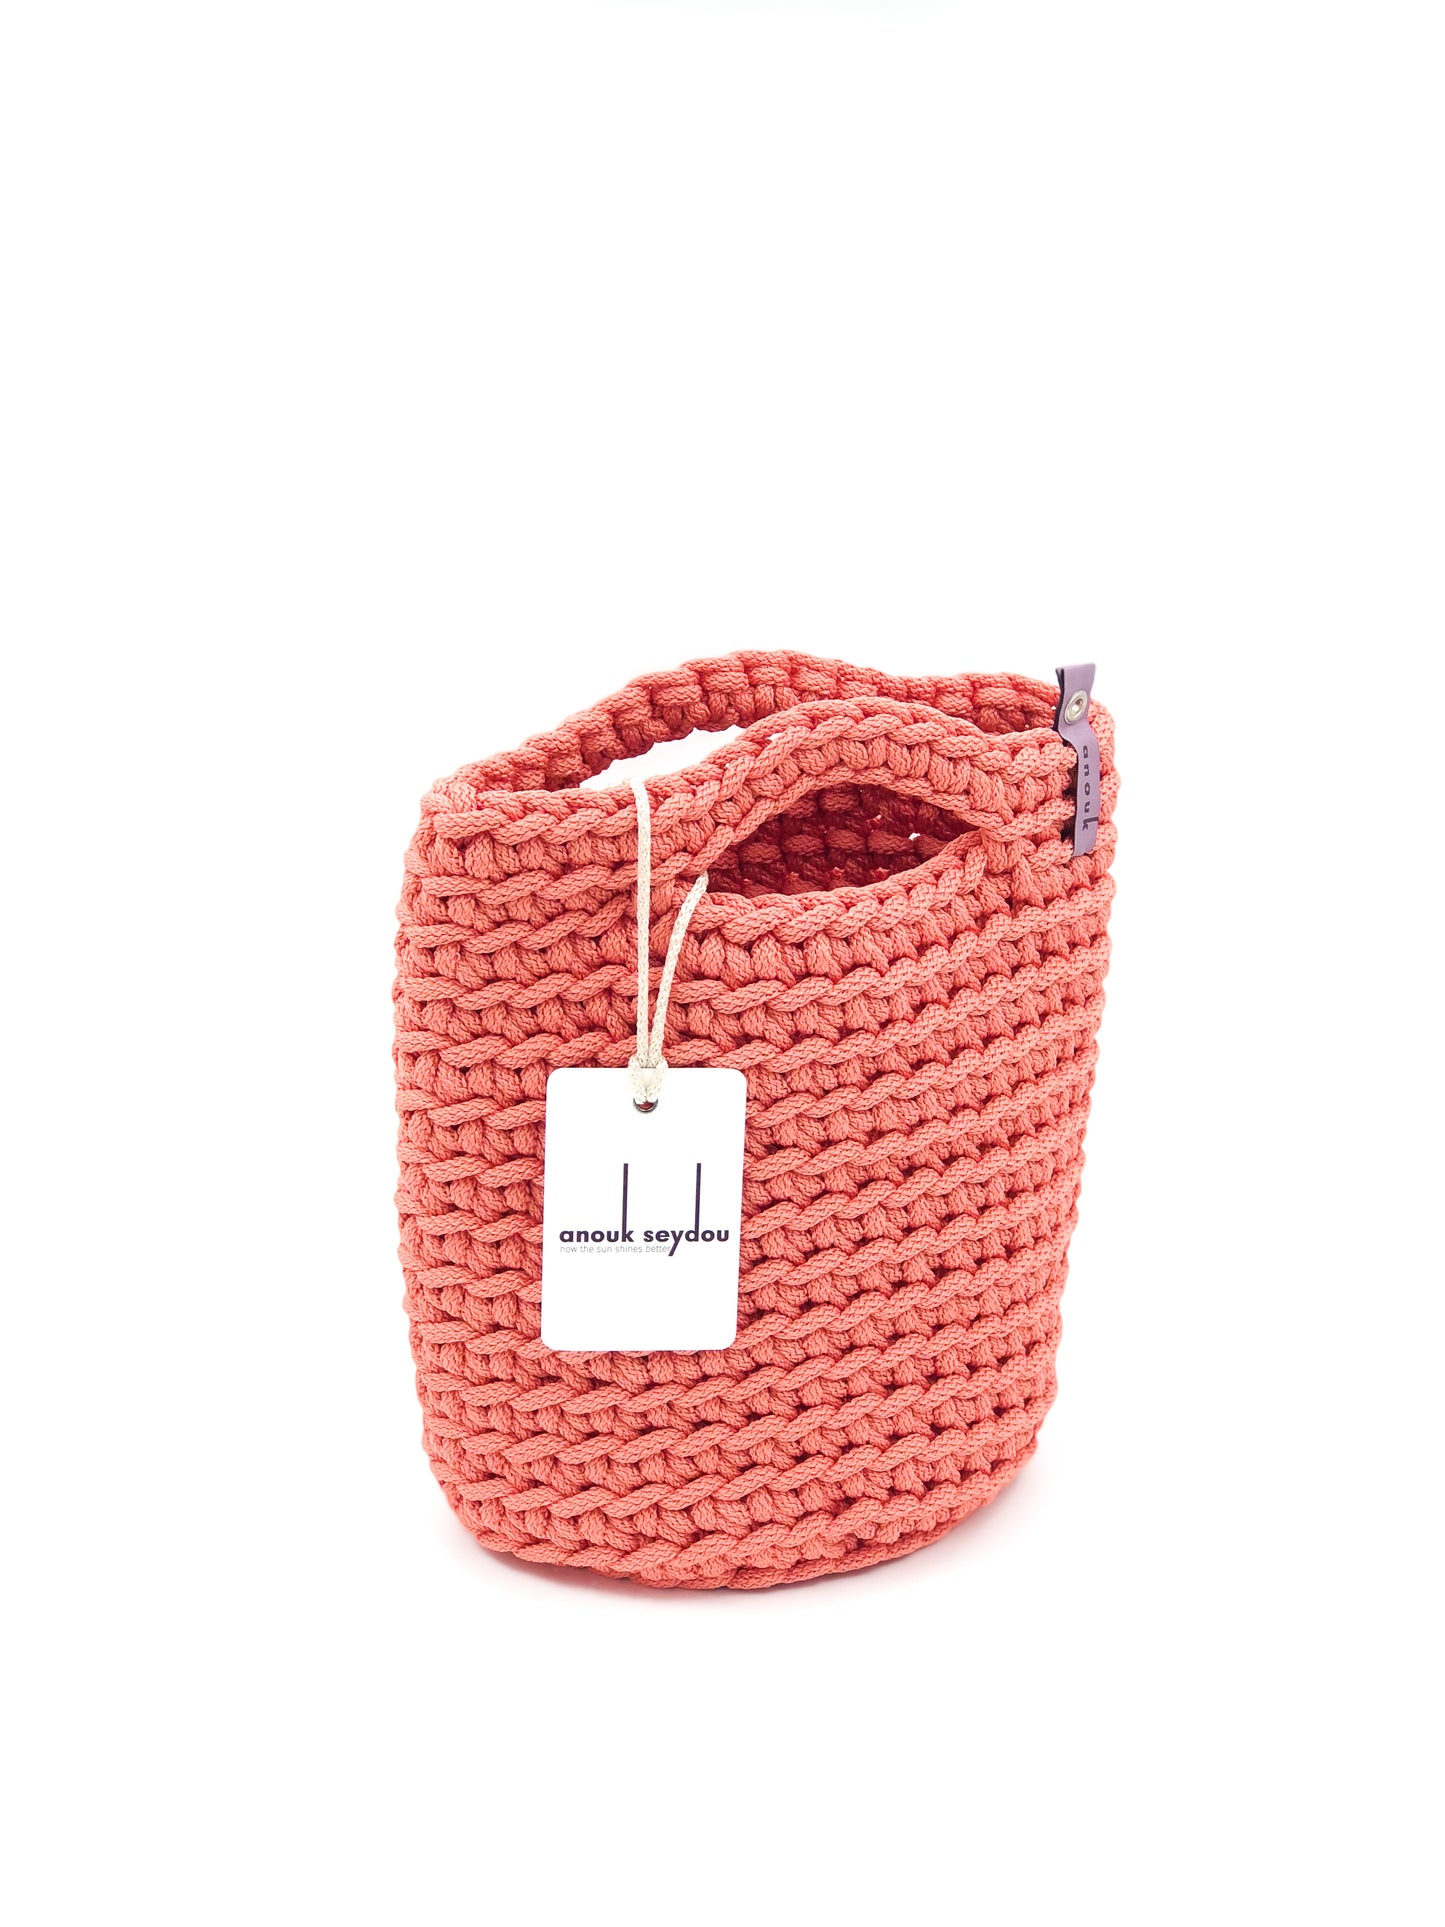 Tote Bag Scandinavian Style Salmon Crochet Size MINI